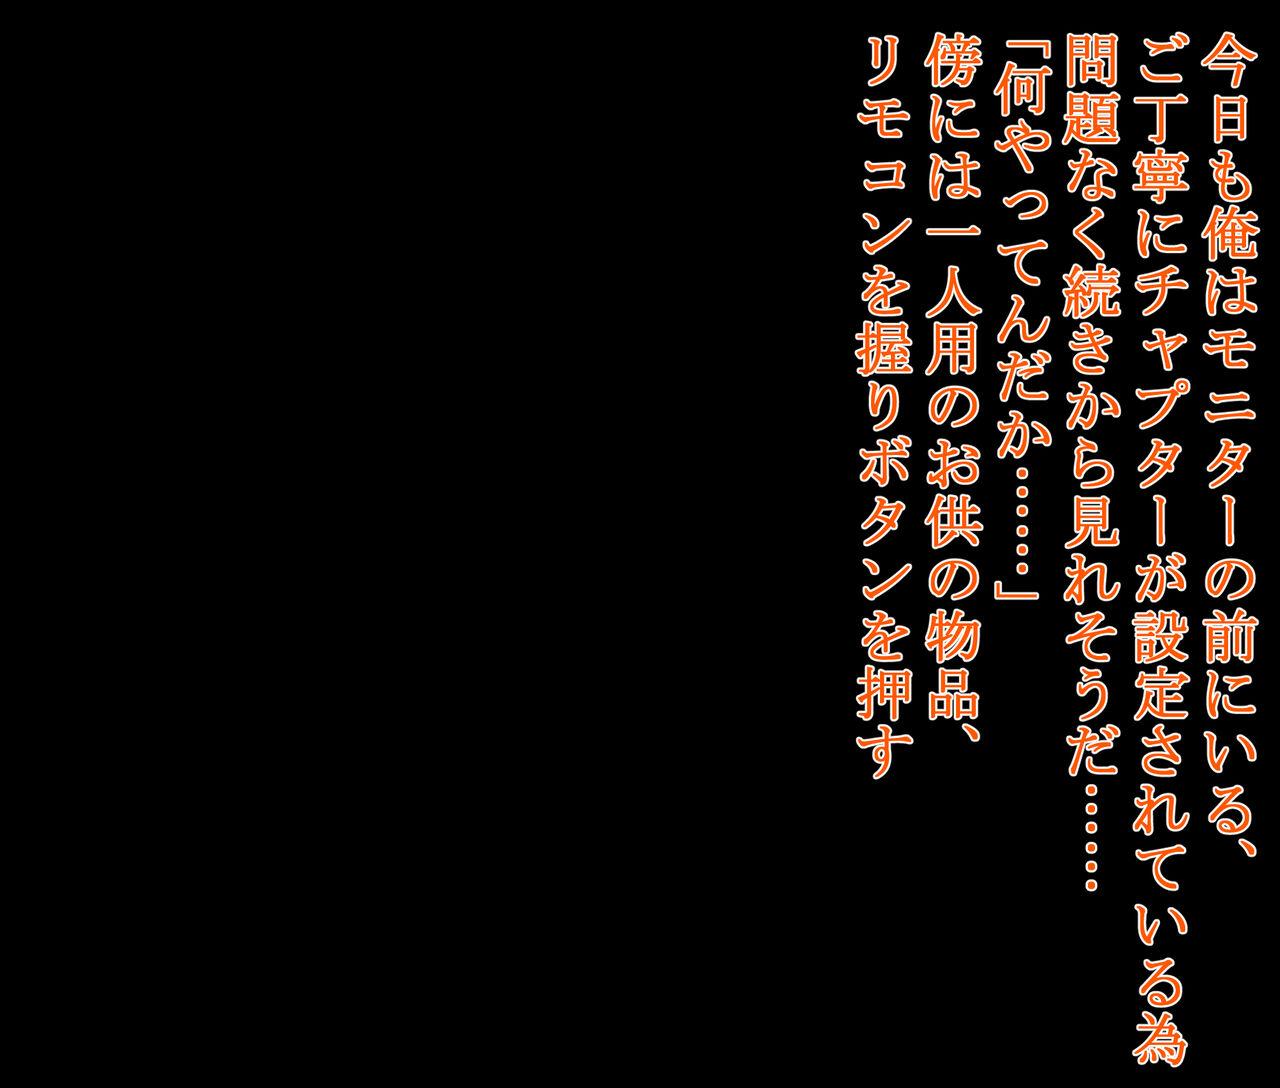 hīrō kuro neko vs kankaku kyōyū OB ‼ kage kaku enkaku chōkyō de yuki ma kuri ‼～ seigi no mikata no rīdā kara kuri chi 〇 po onaho ni ochiru shunkan ～ 246